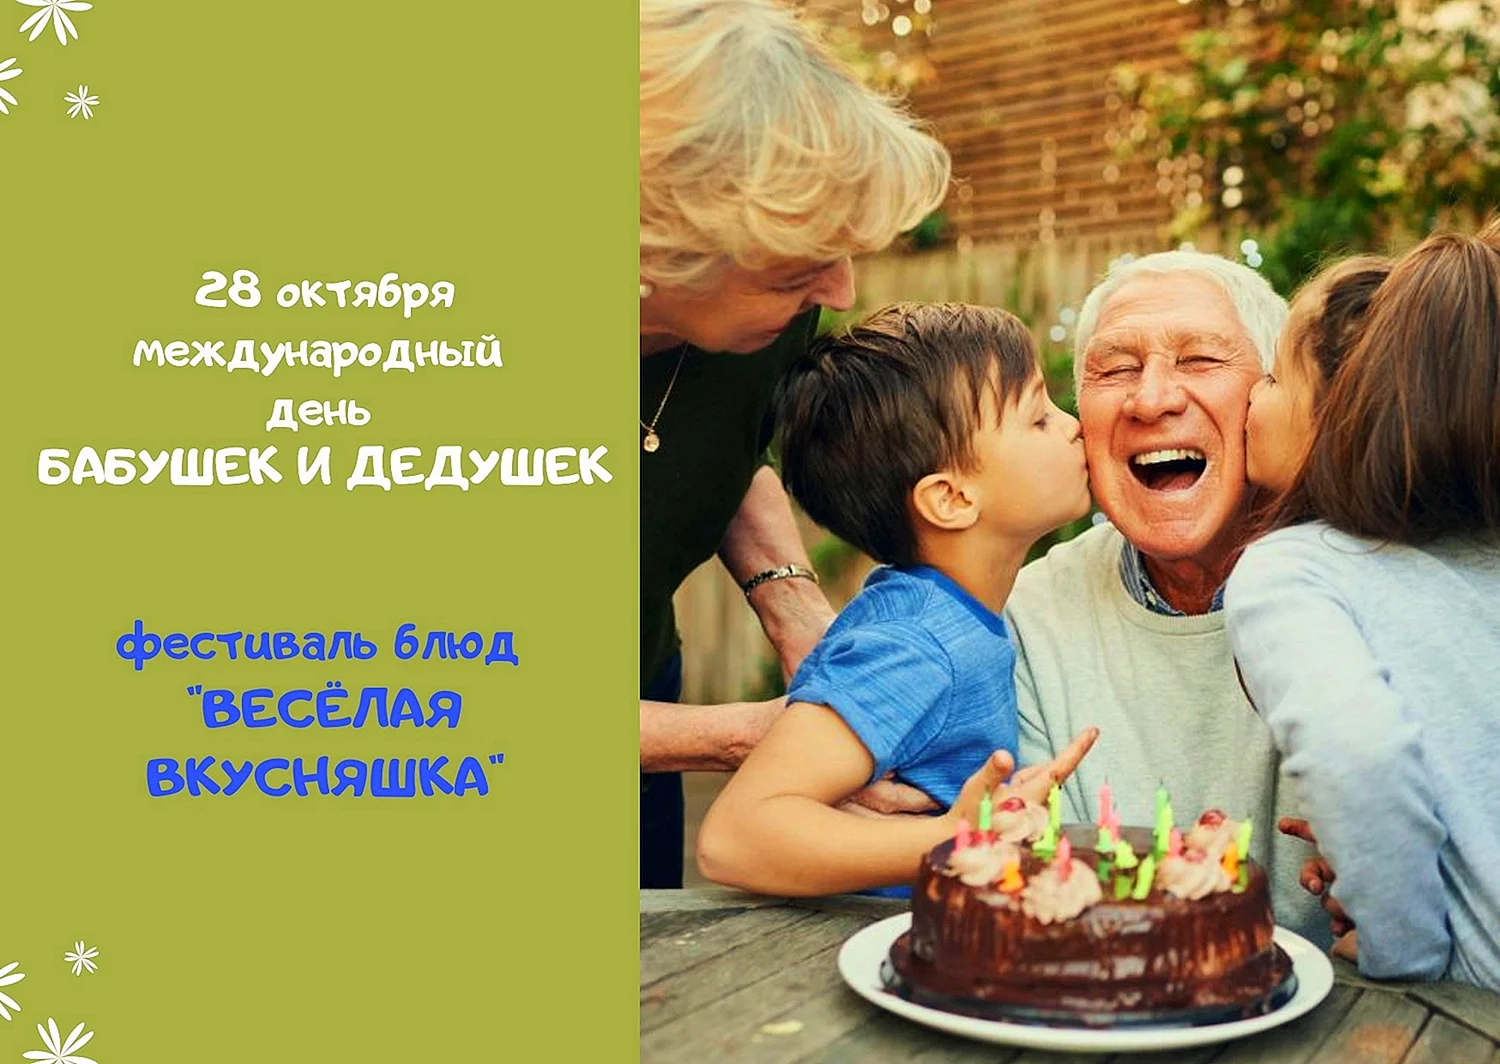 Международный день бабушек и дедушек